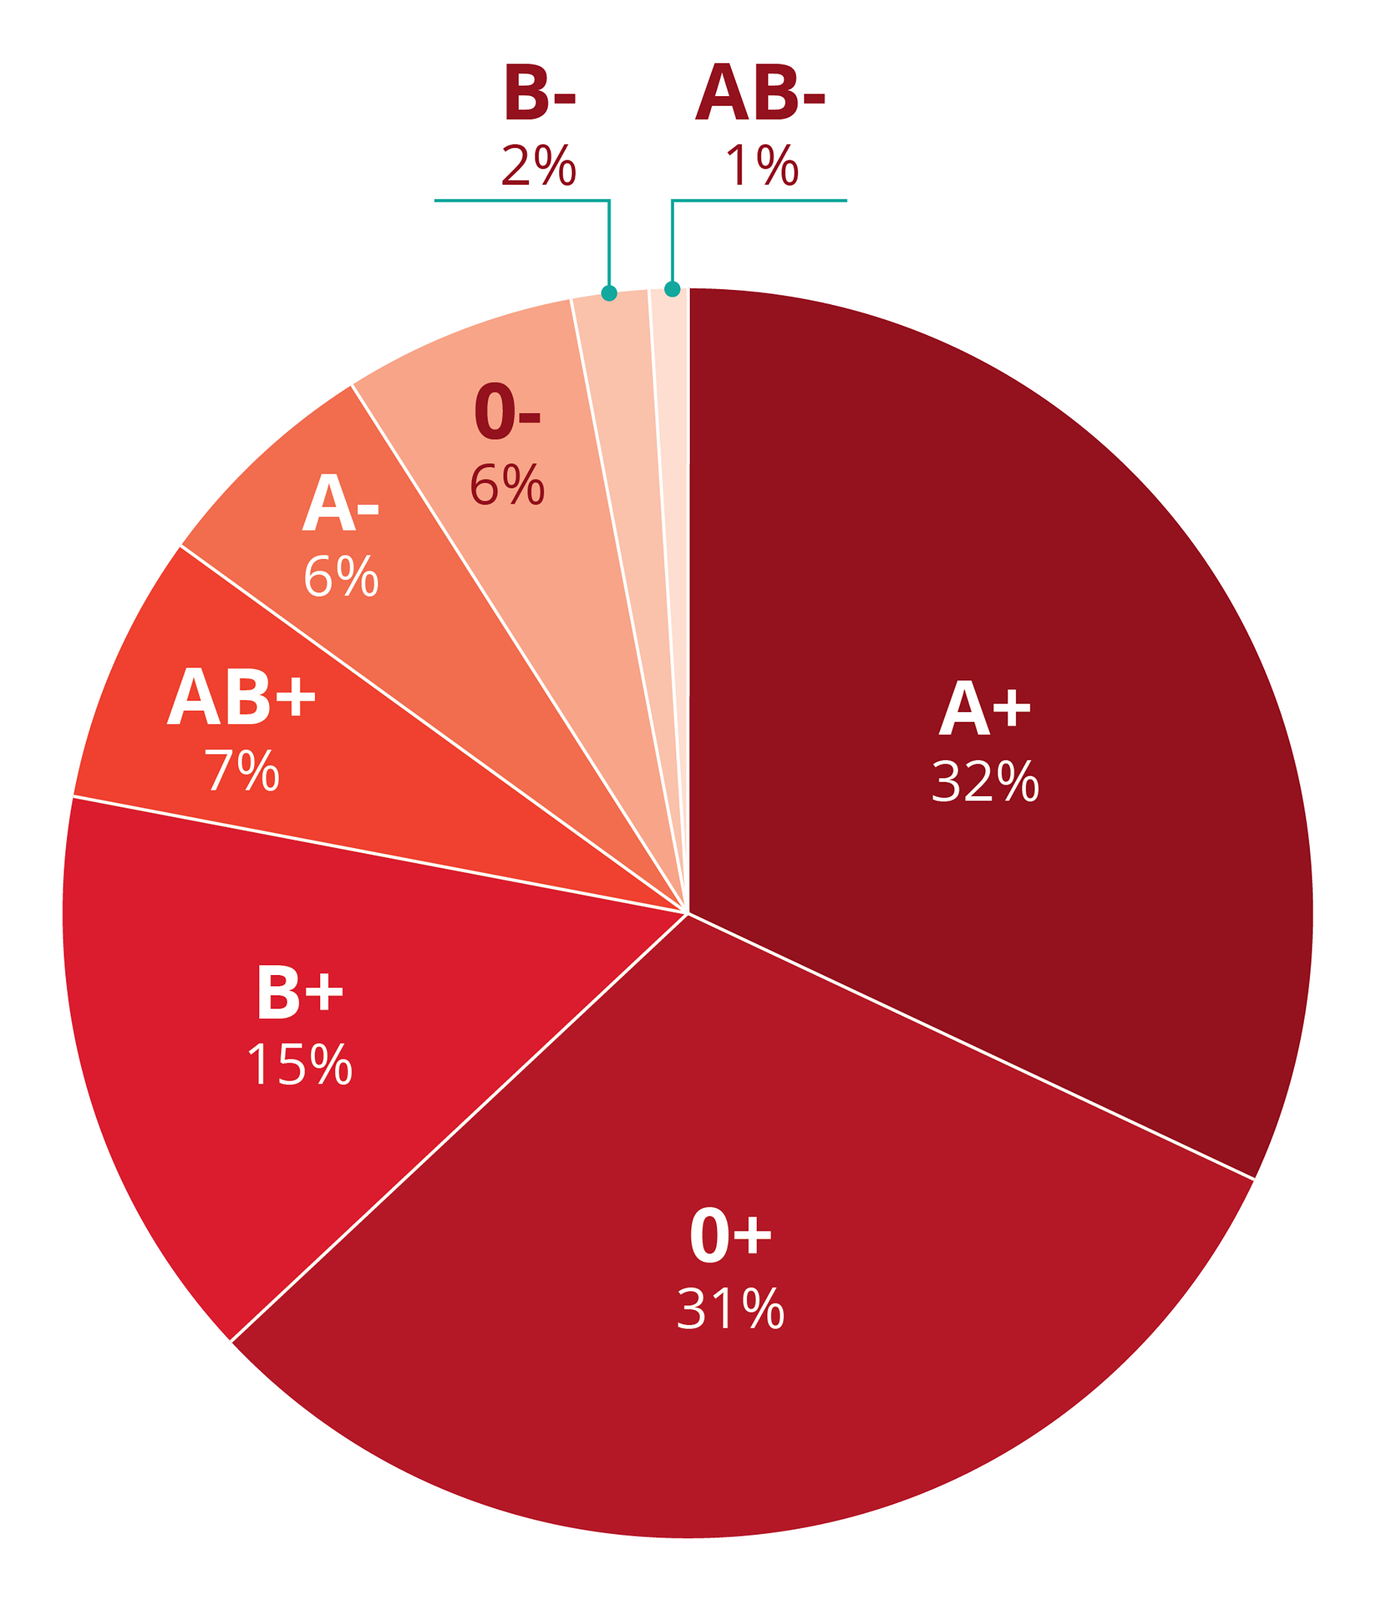 Diagram kołowy przedstawia częstość występowania grup krwi wPolsce. Oprócz grupy krwi uwzględniono czynnik Rh minus lub plus. Różne odcienie czerwieni wskazują, jak często występuje dana grupa krwi. Na górze najmniej częste grupy: B- (2 %) i AB- (1%). Najczęstsze są grupy A+ (32%) i 0+ (31%).